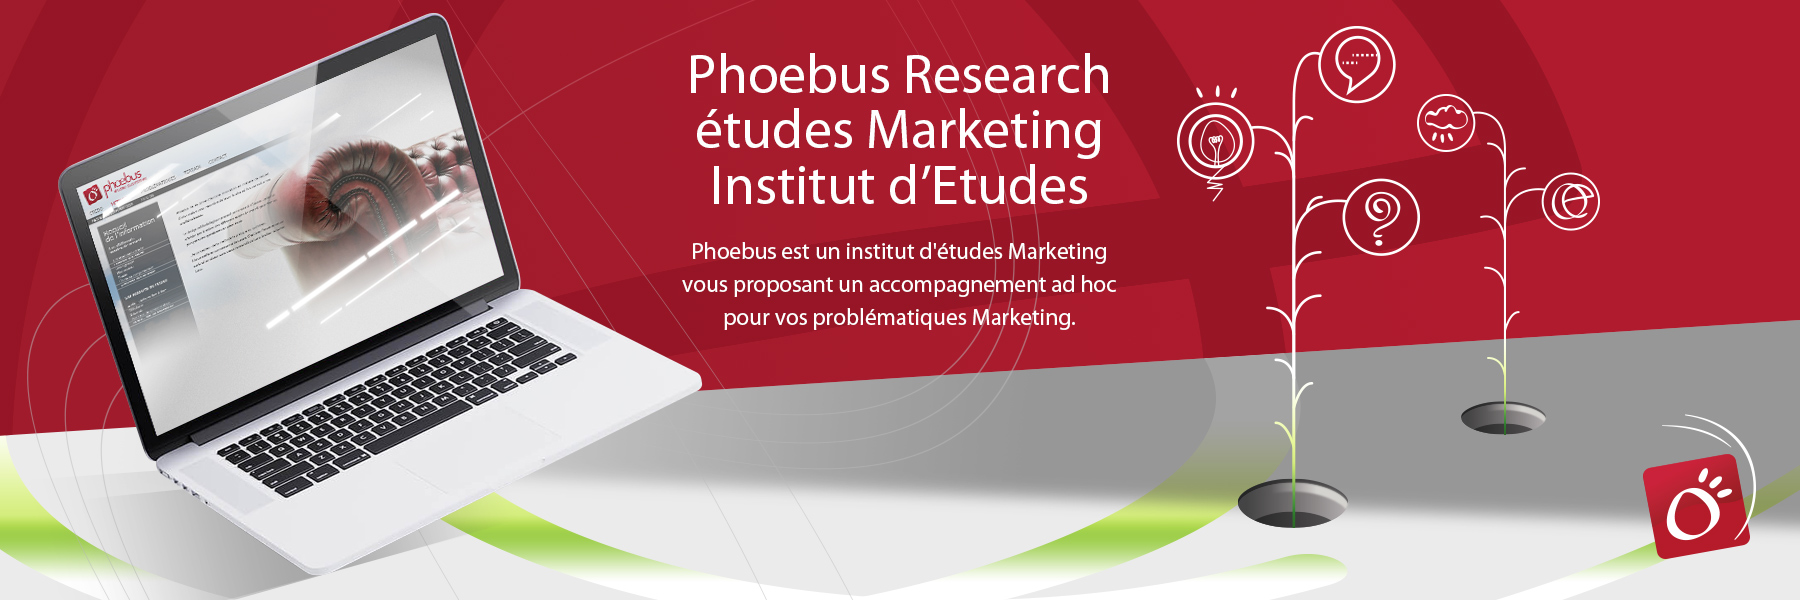 Phoebus Research design ux/ui